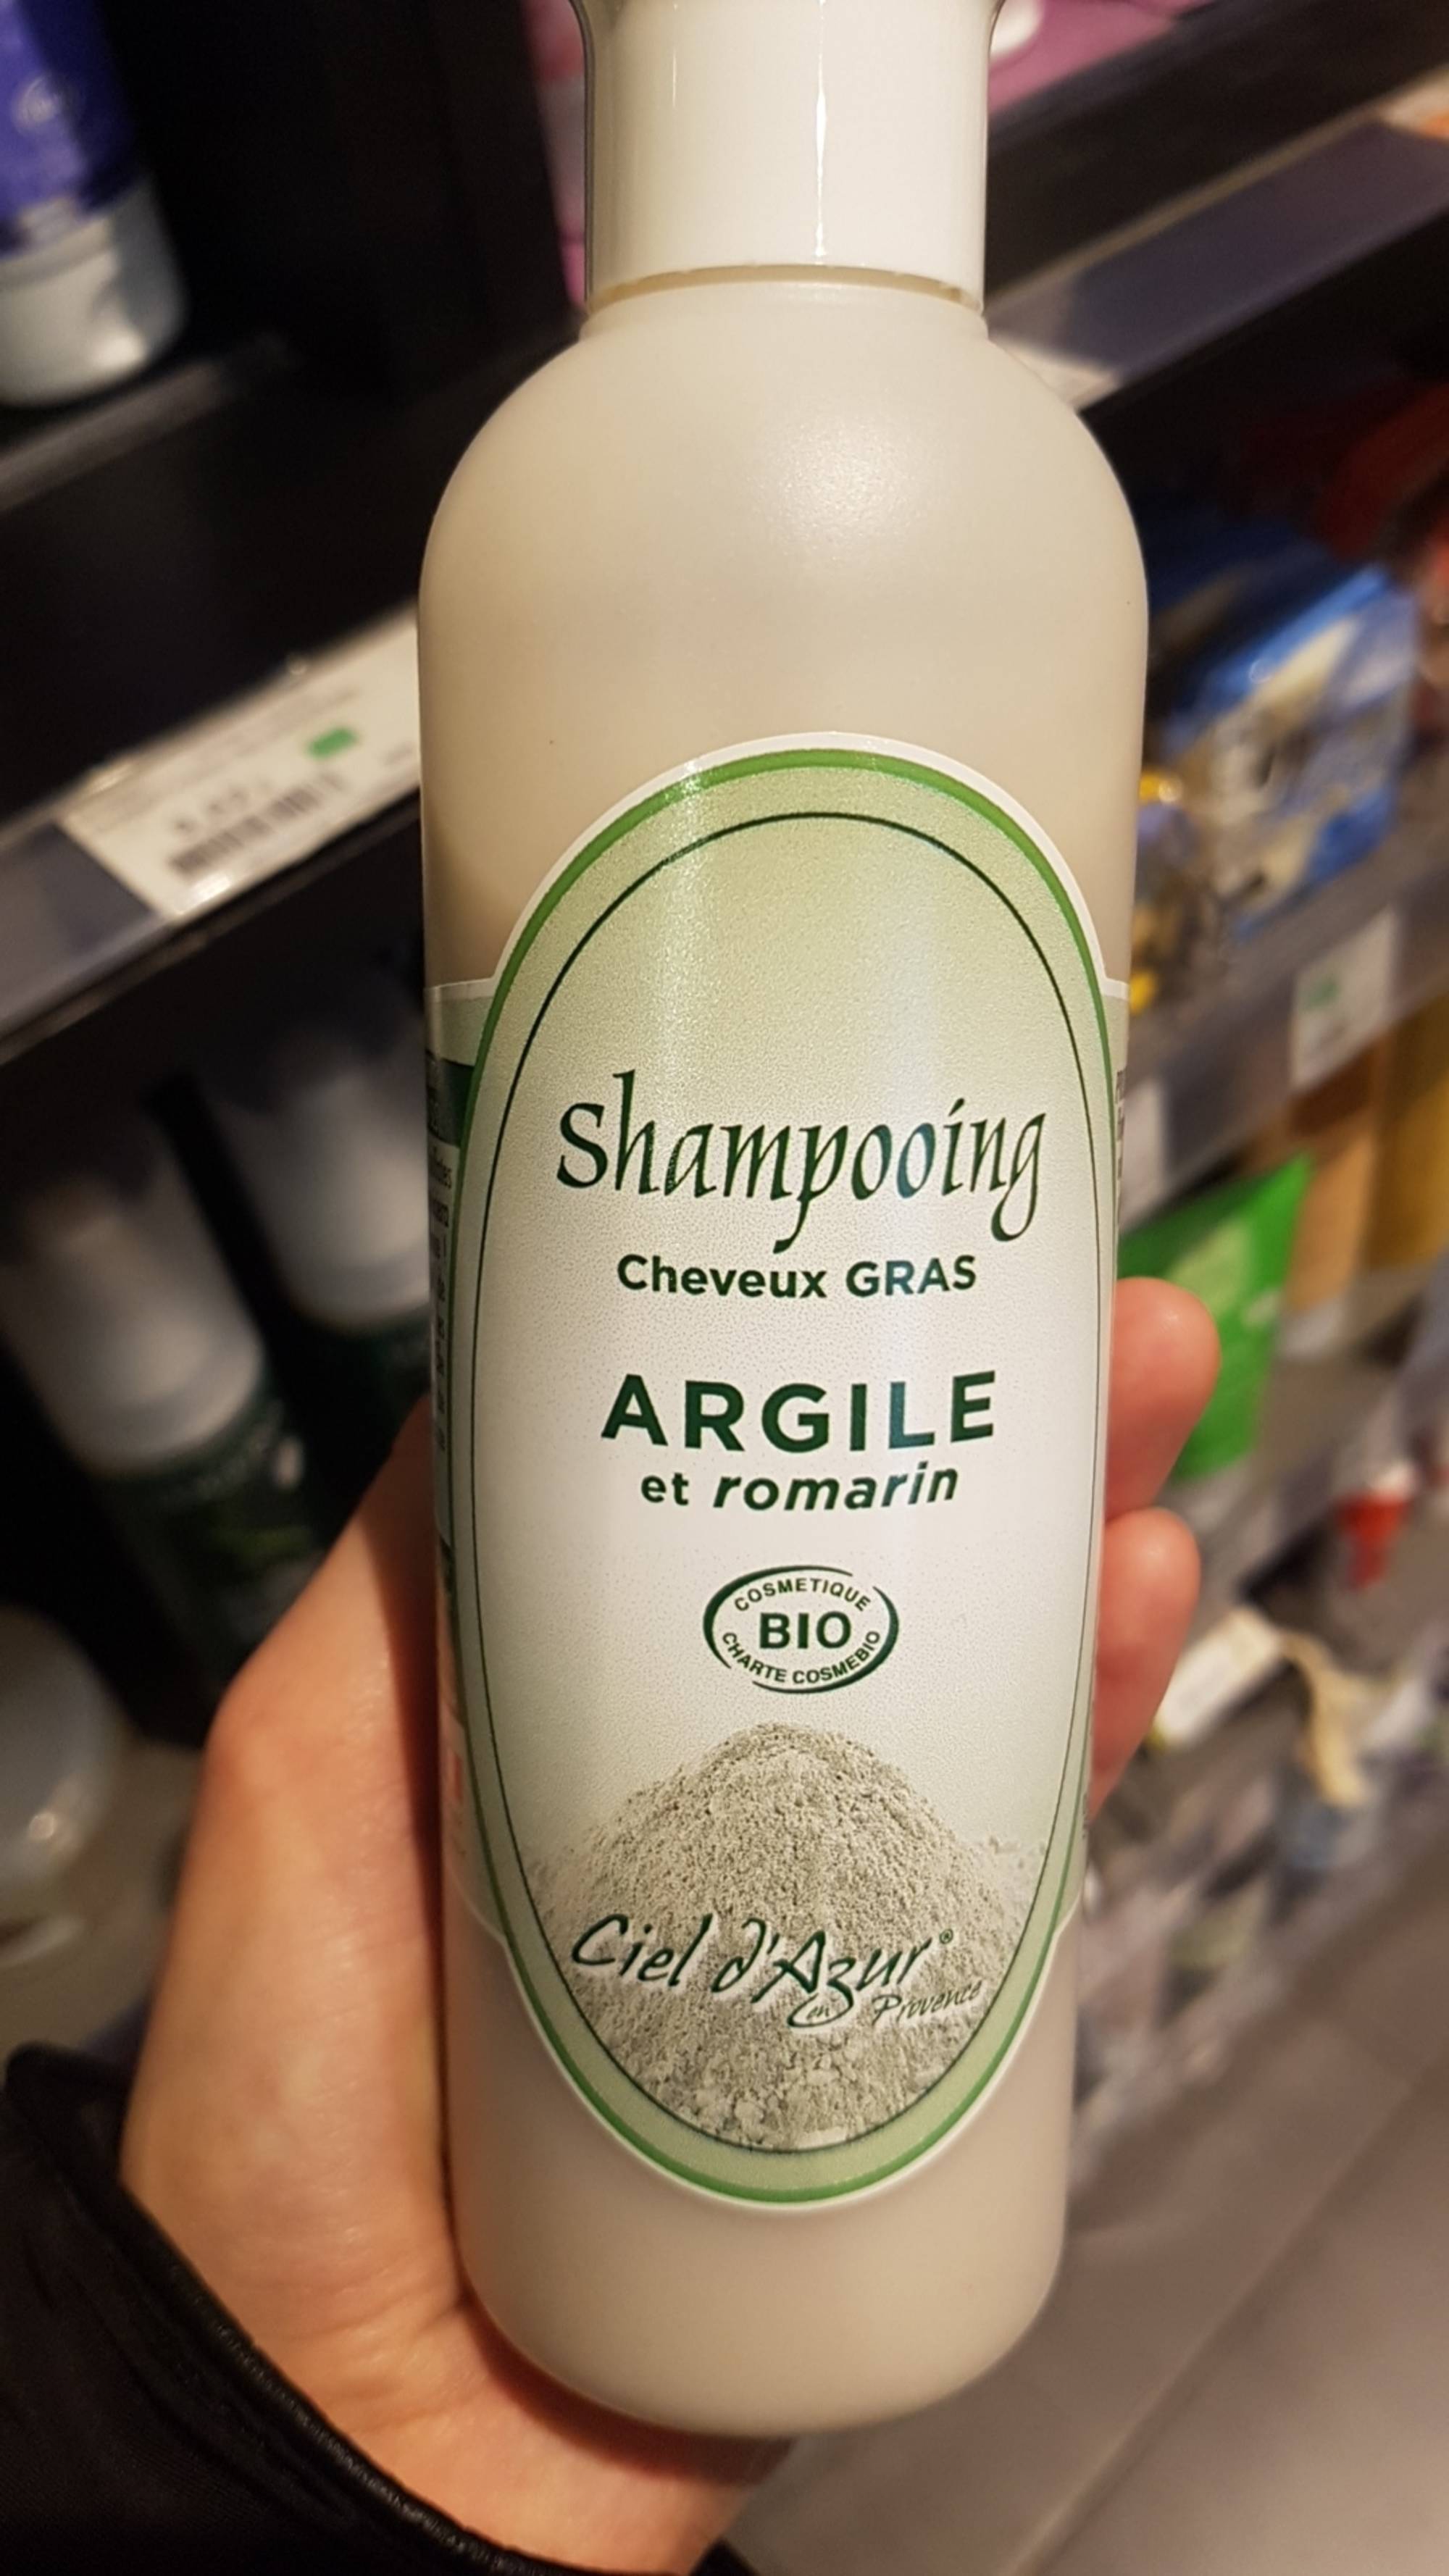 CIEL D'AZUR - Shampooing argile et romarin cheveux gras bio